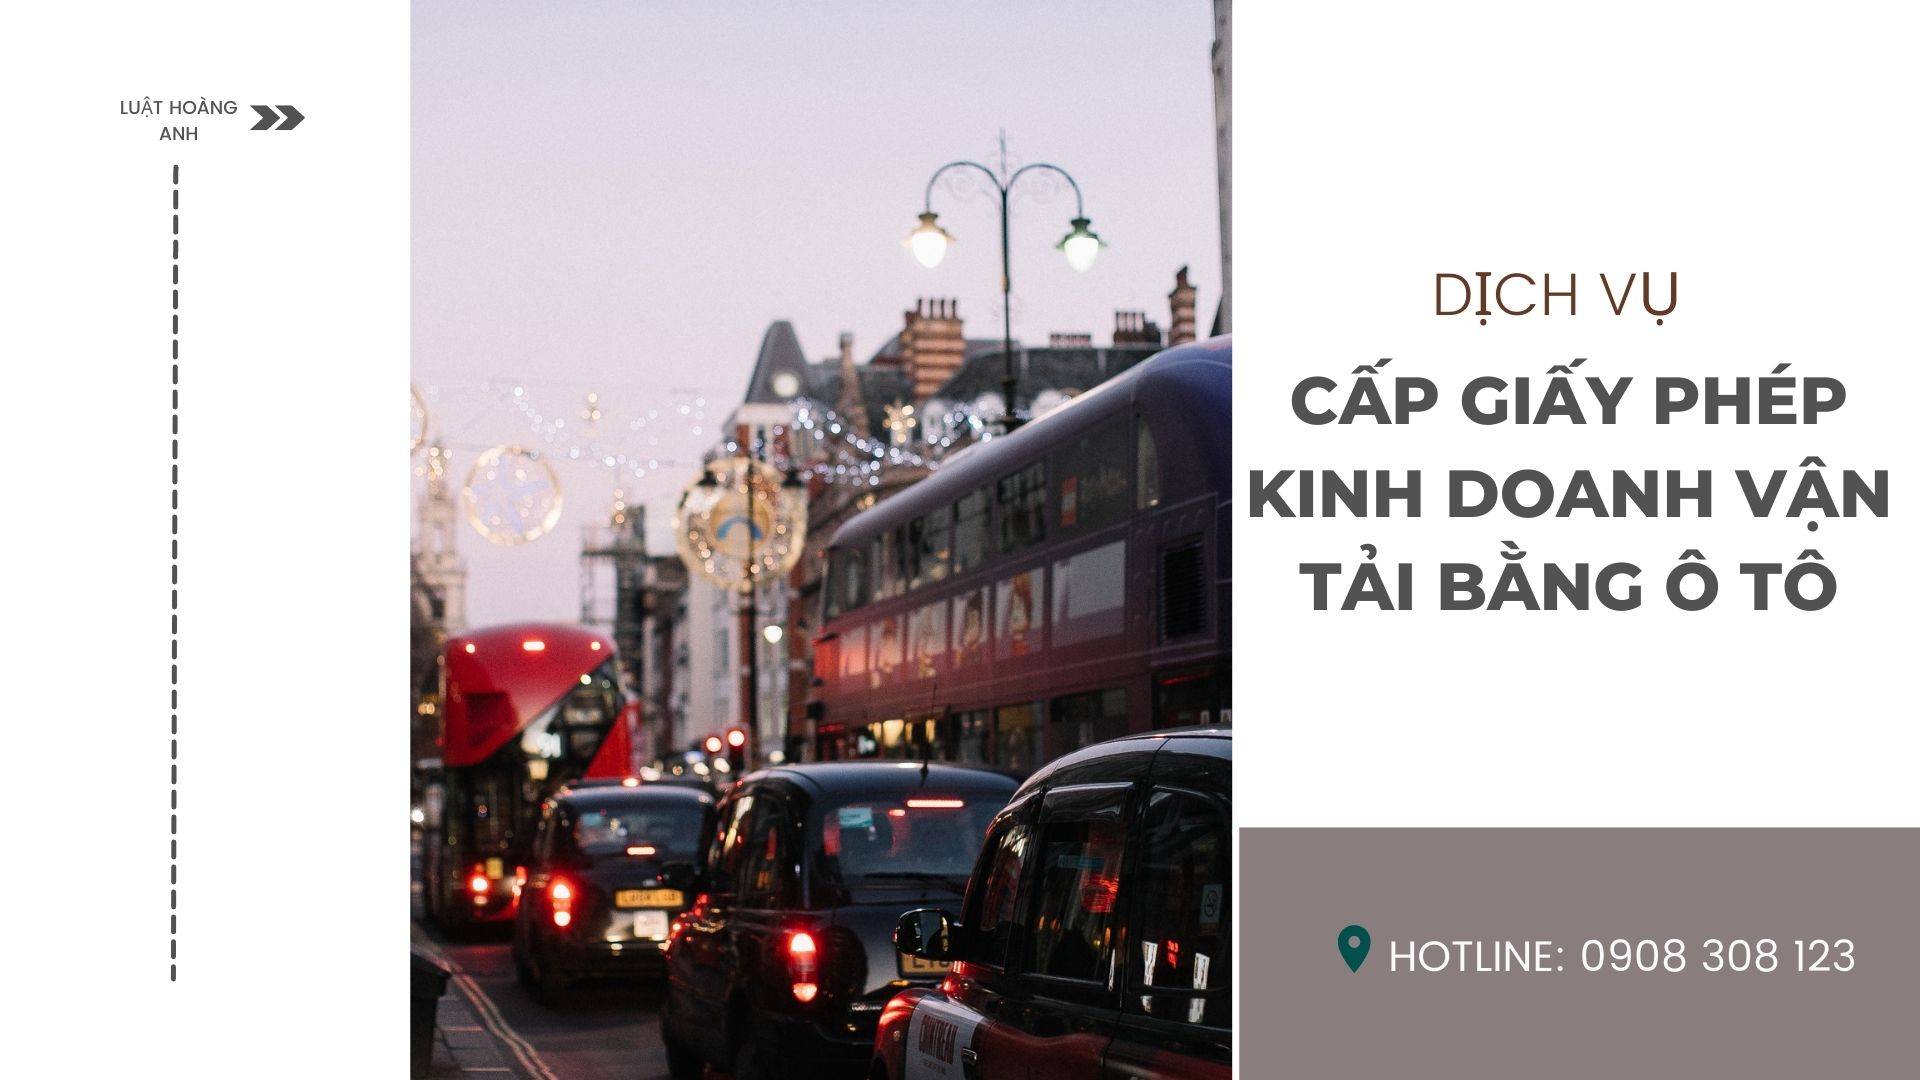 Dịch vụ cấp giấy phép kinh doanh vận tải bằng ô tô tại tỉnh Lâm Đồng